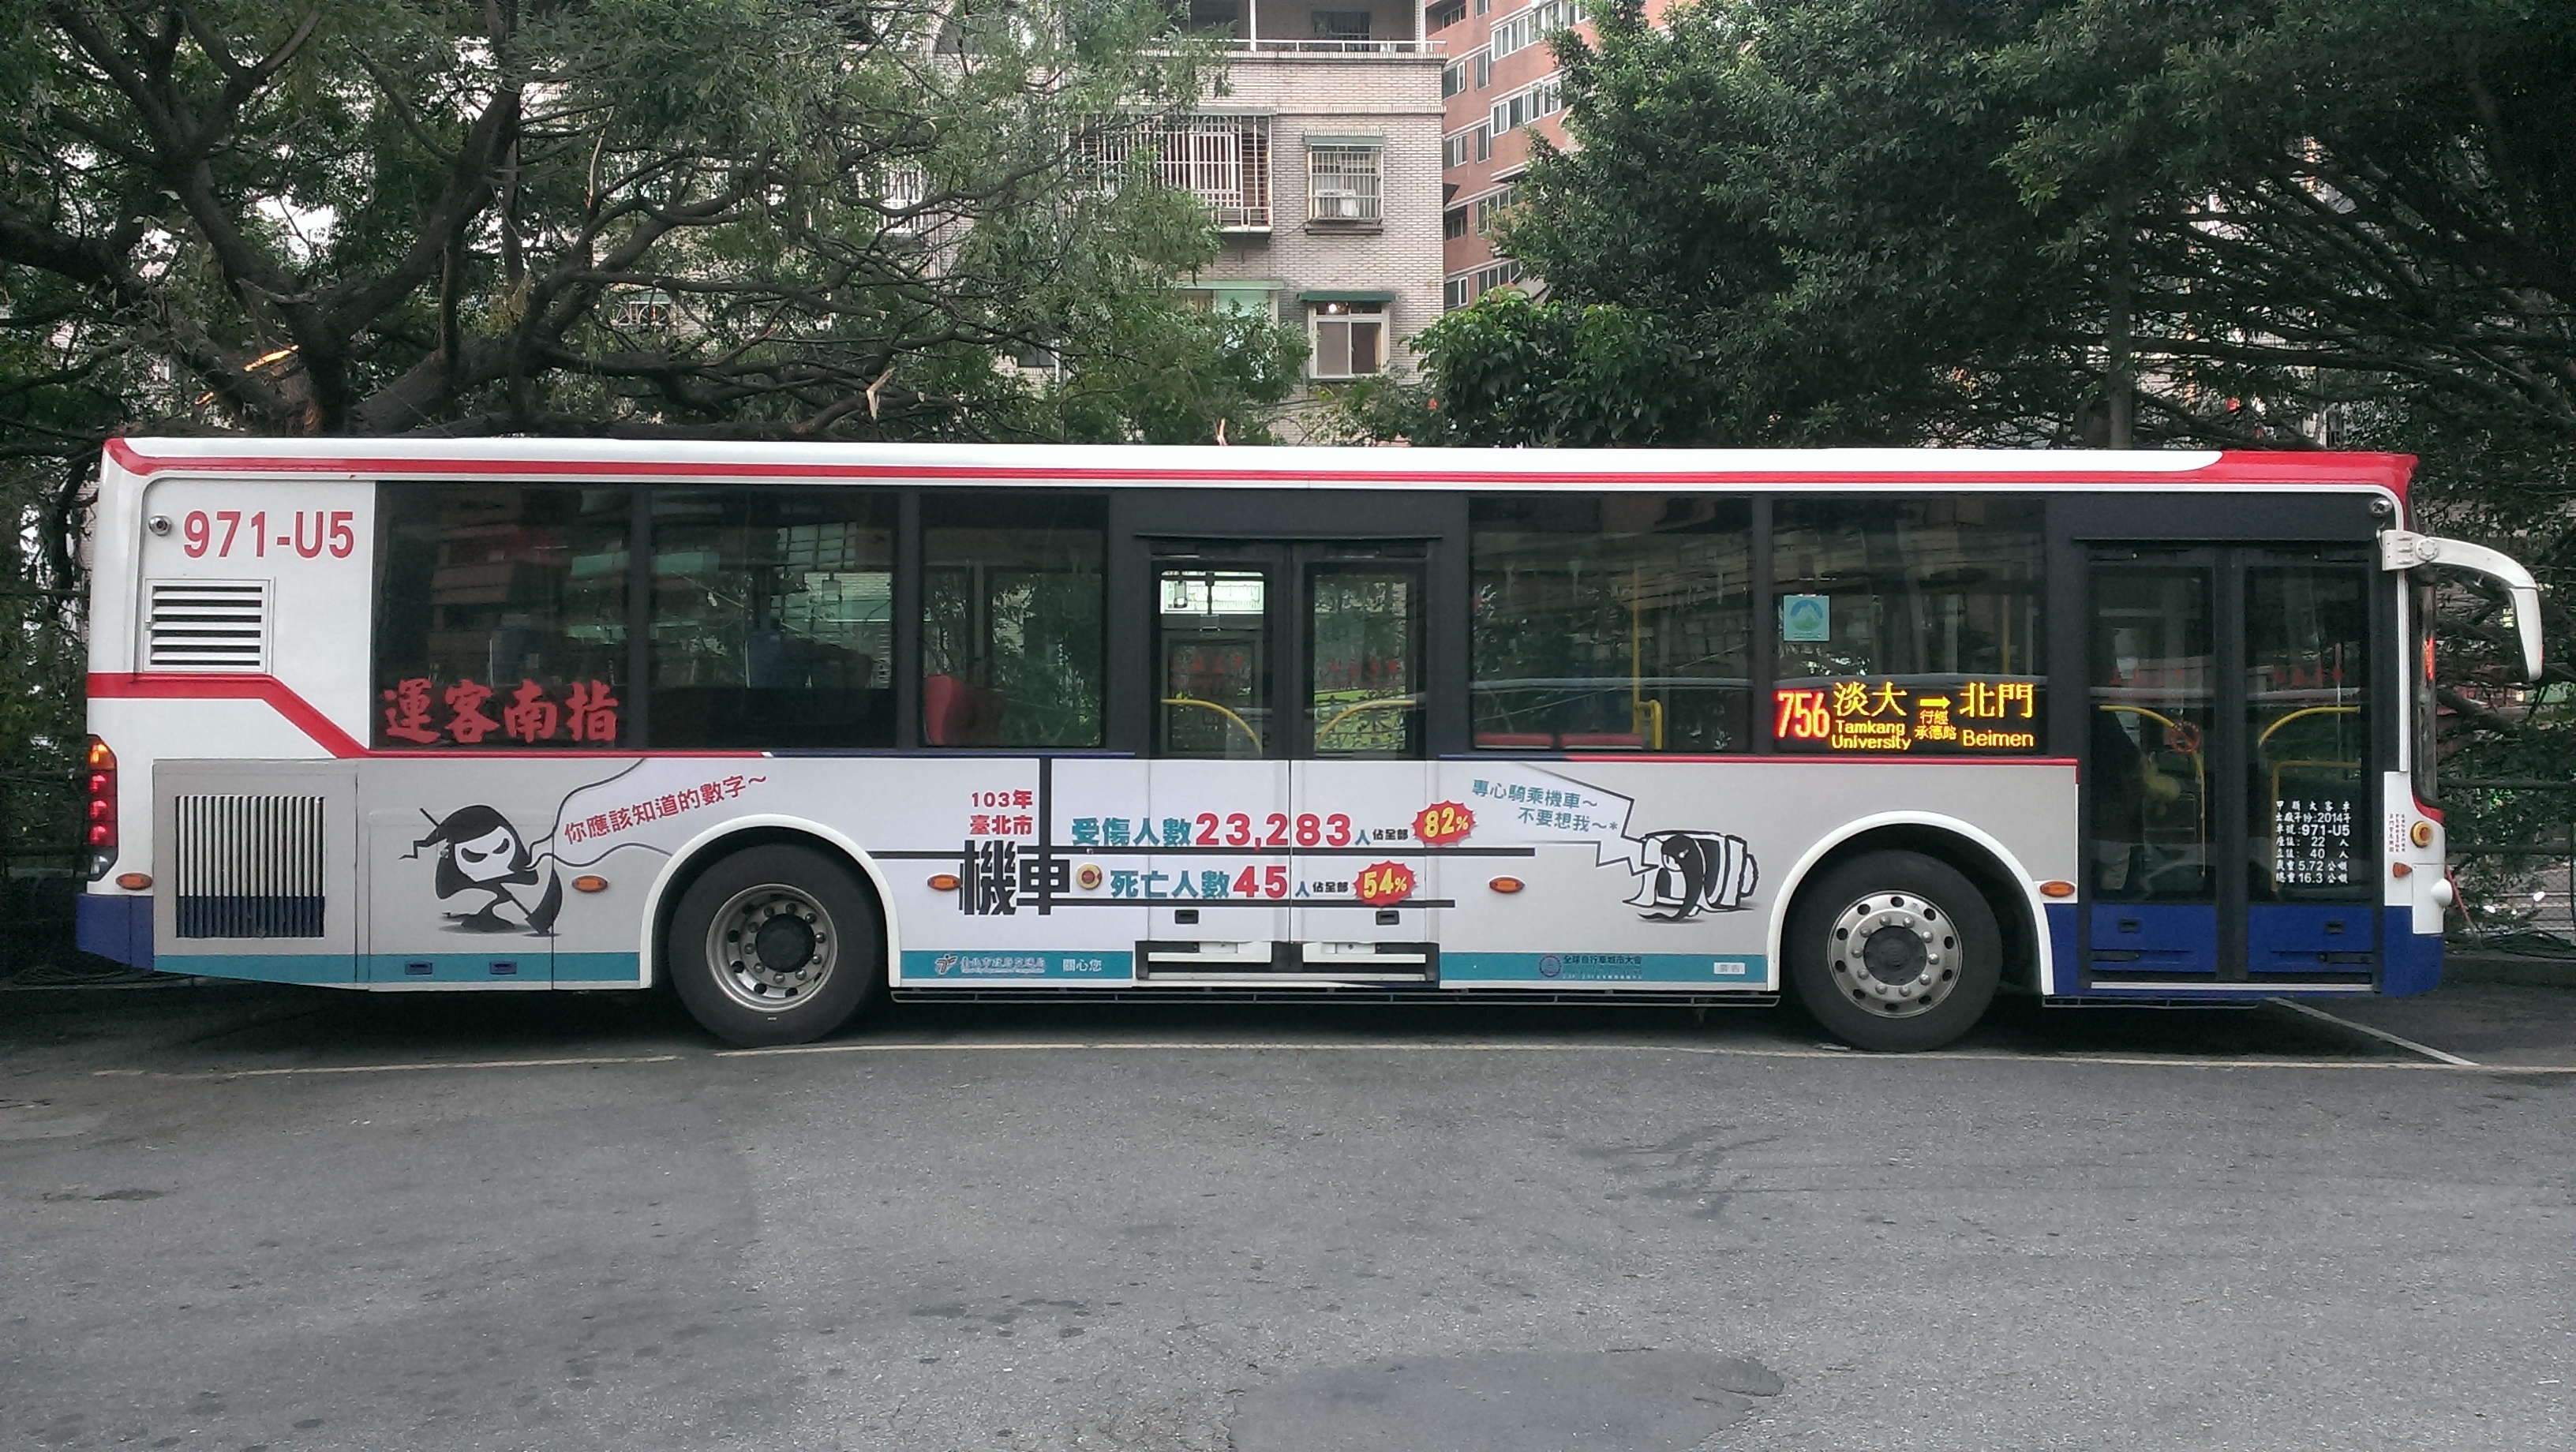 公車車體廣告照片 